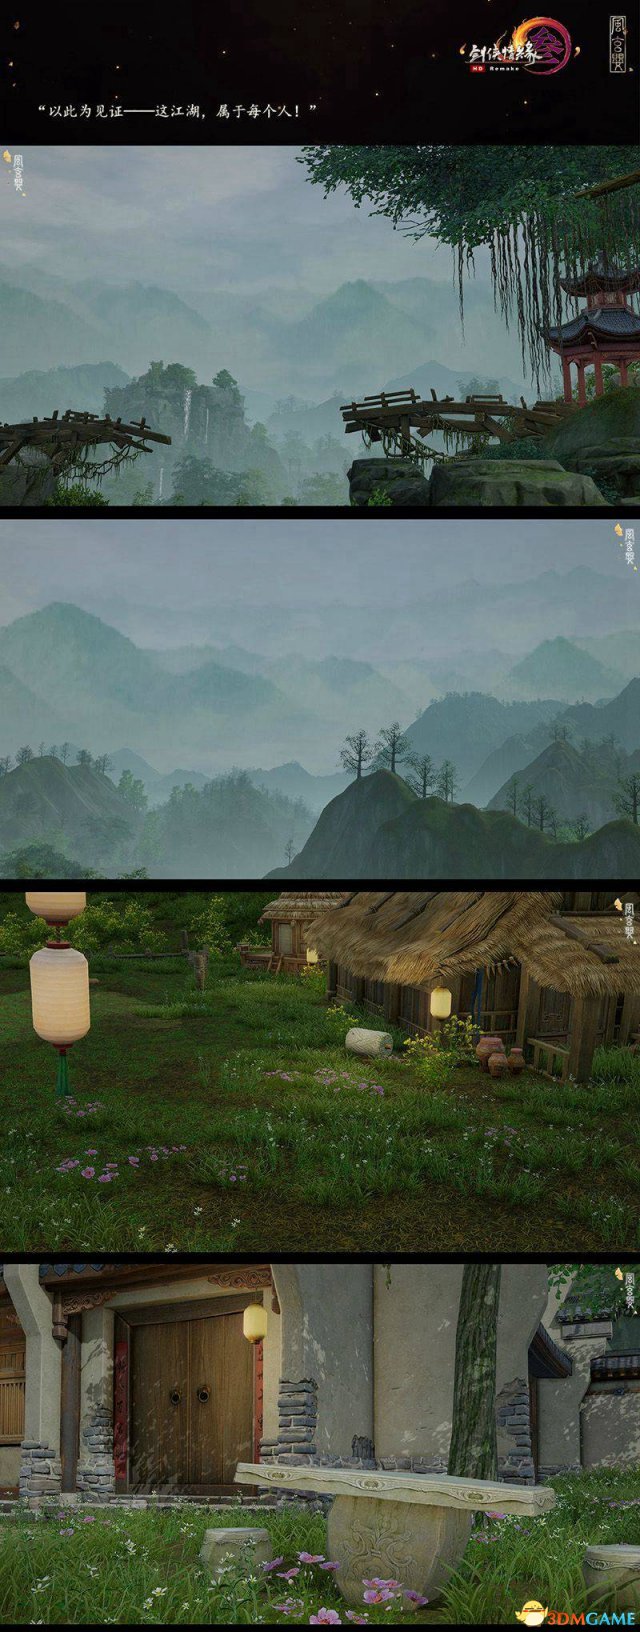 大美江湖 《剑网3》重制版有爱玩家截图赏